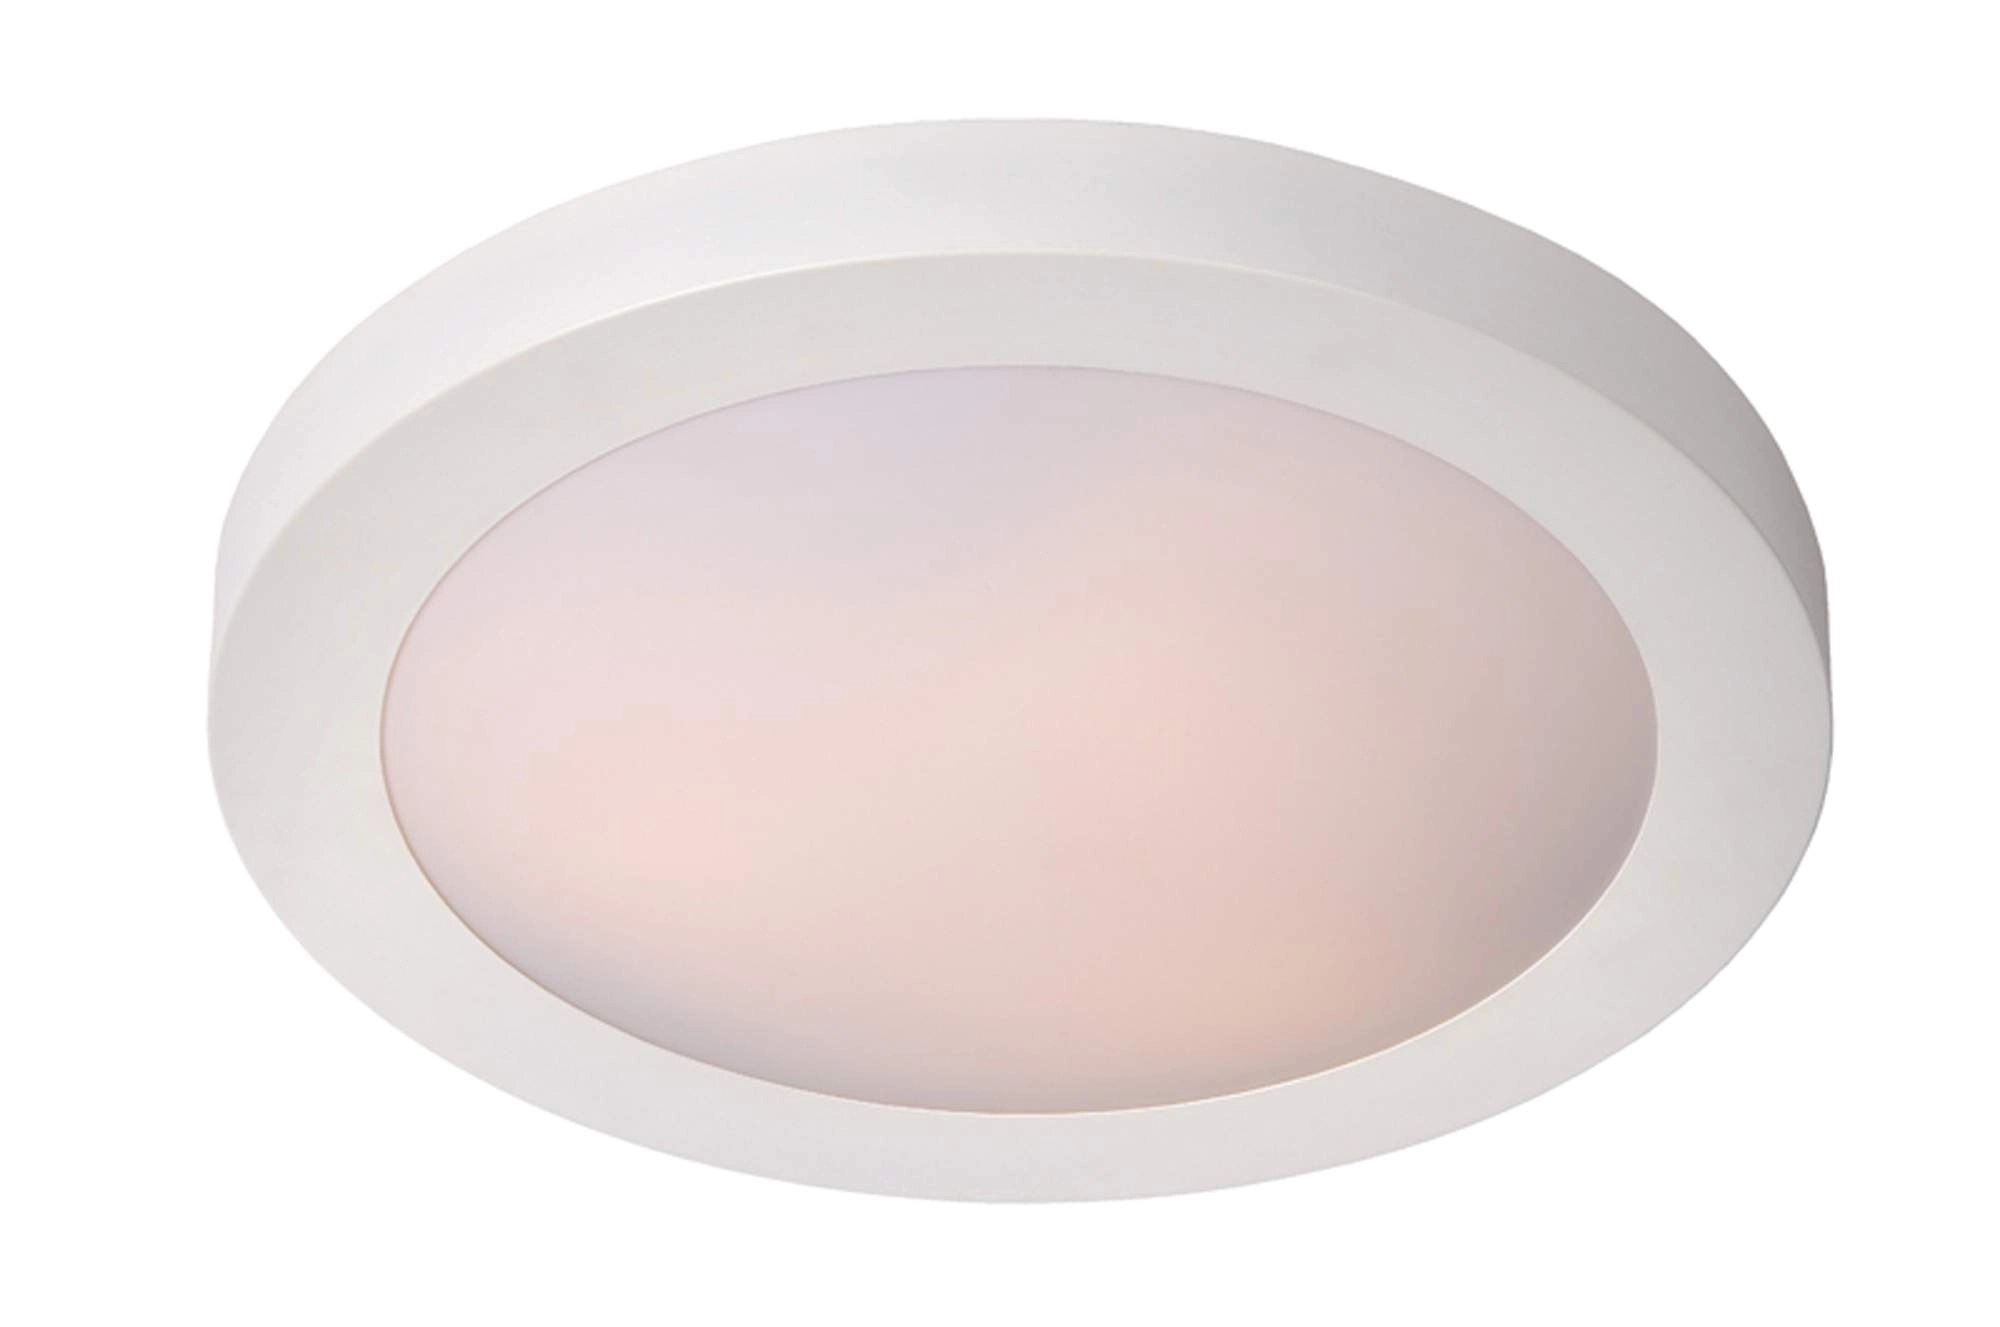 LU 79158/01/31 Lucide FRESH - Flush ceiling light Bathroom - Ø 27 cm - 1xE27 - IP44 - White